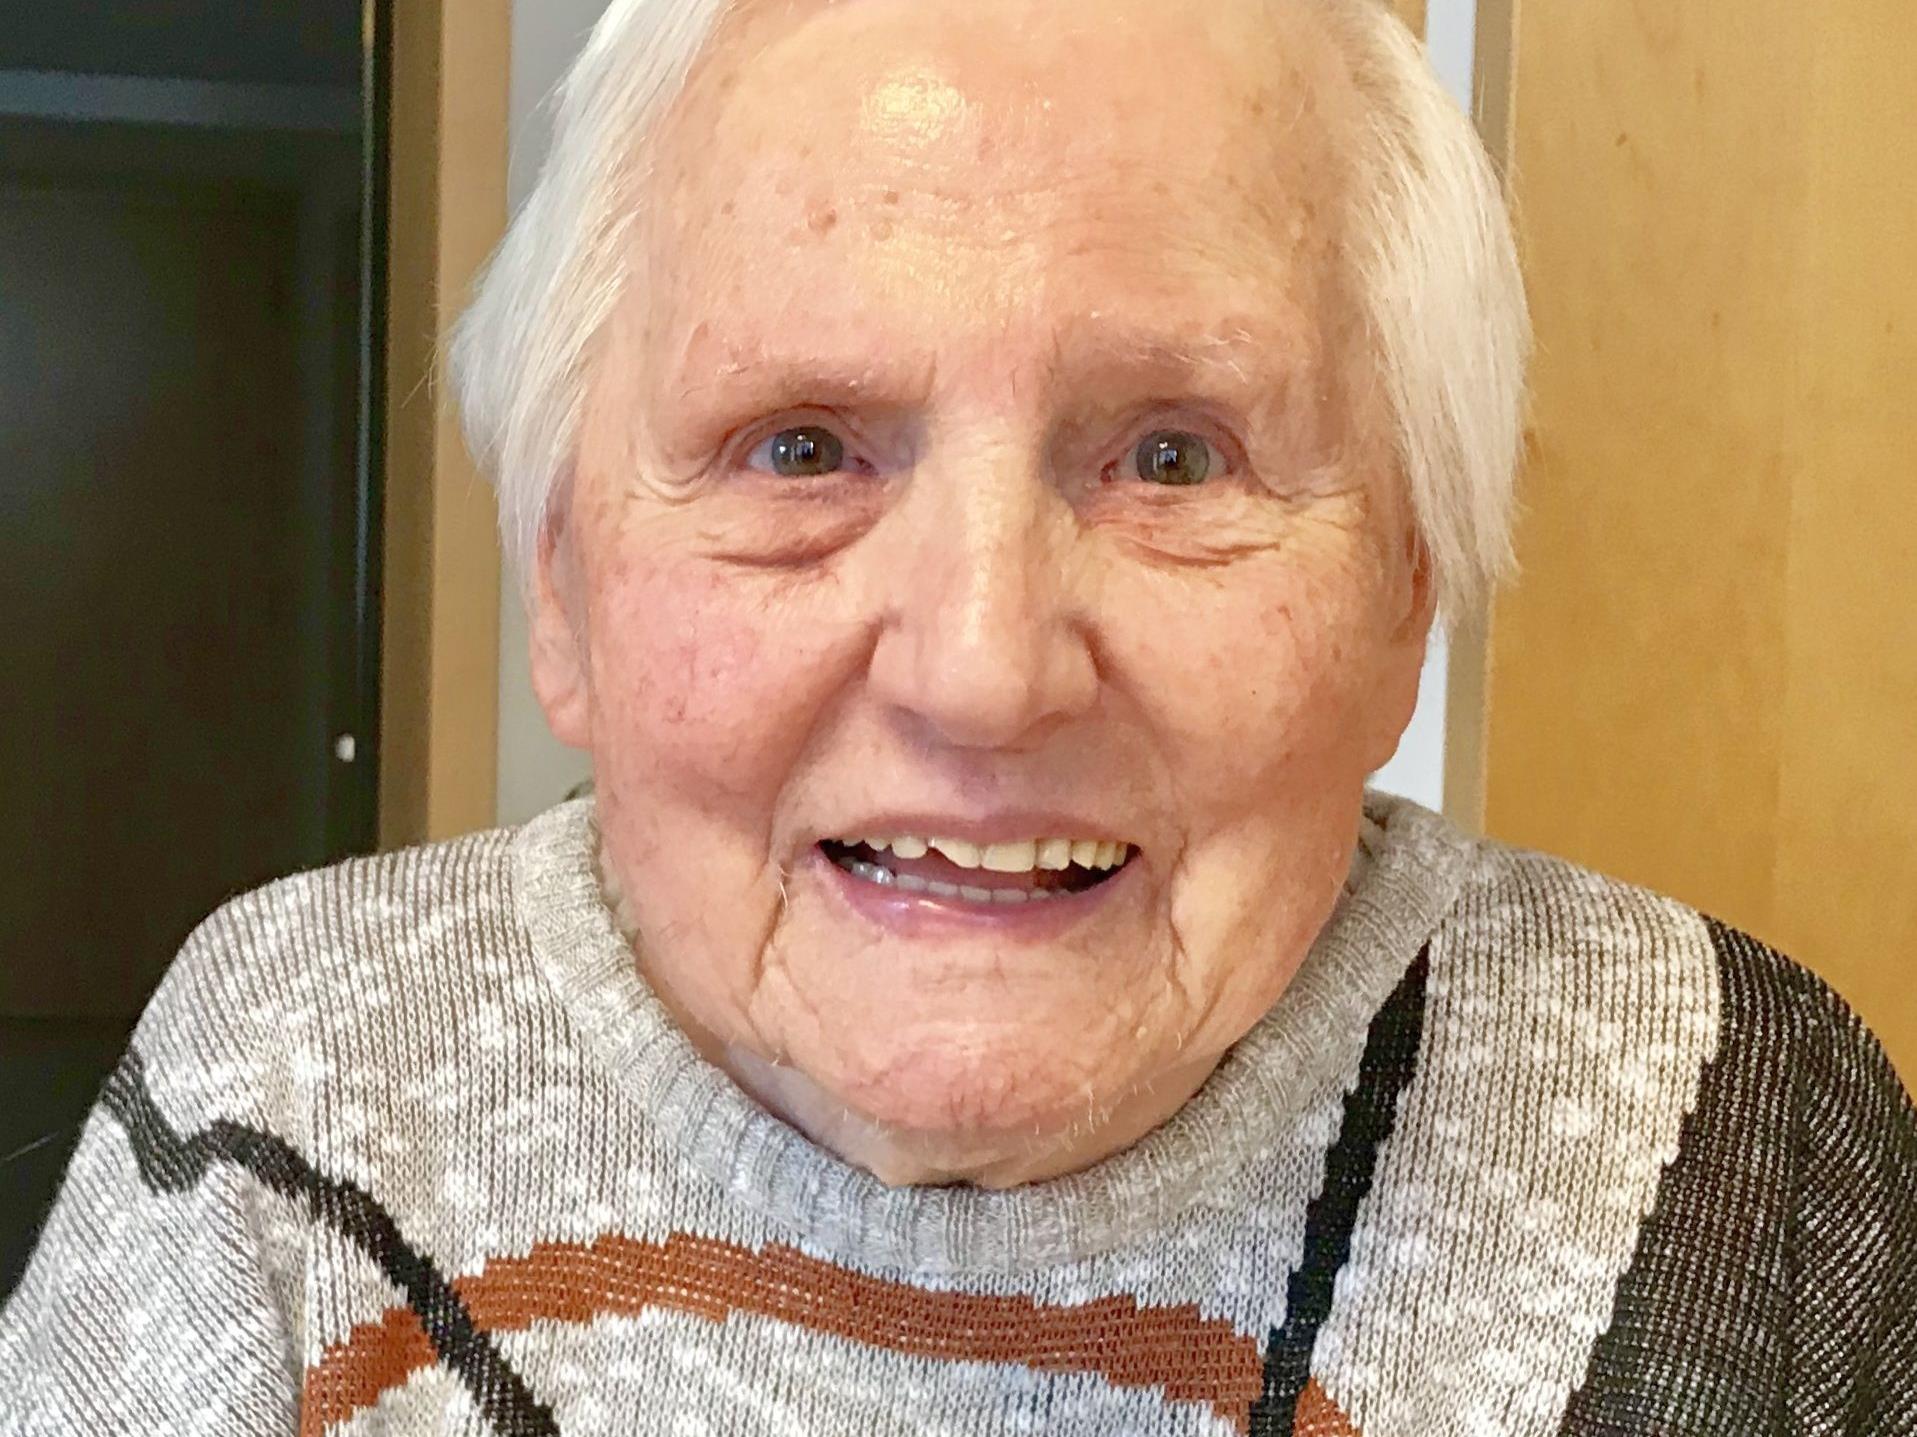 Frau Gertrude Benauer freut sich des Lebens, trotz Einschränkungen des Alters.